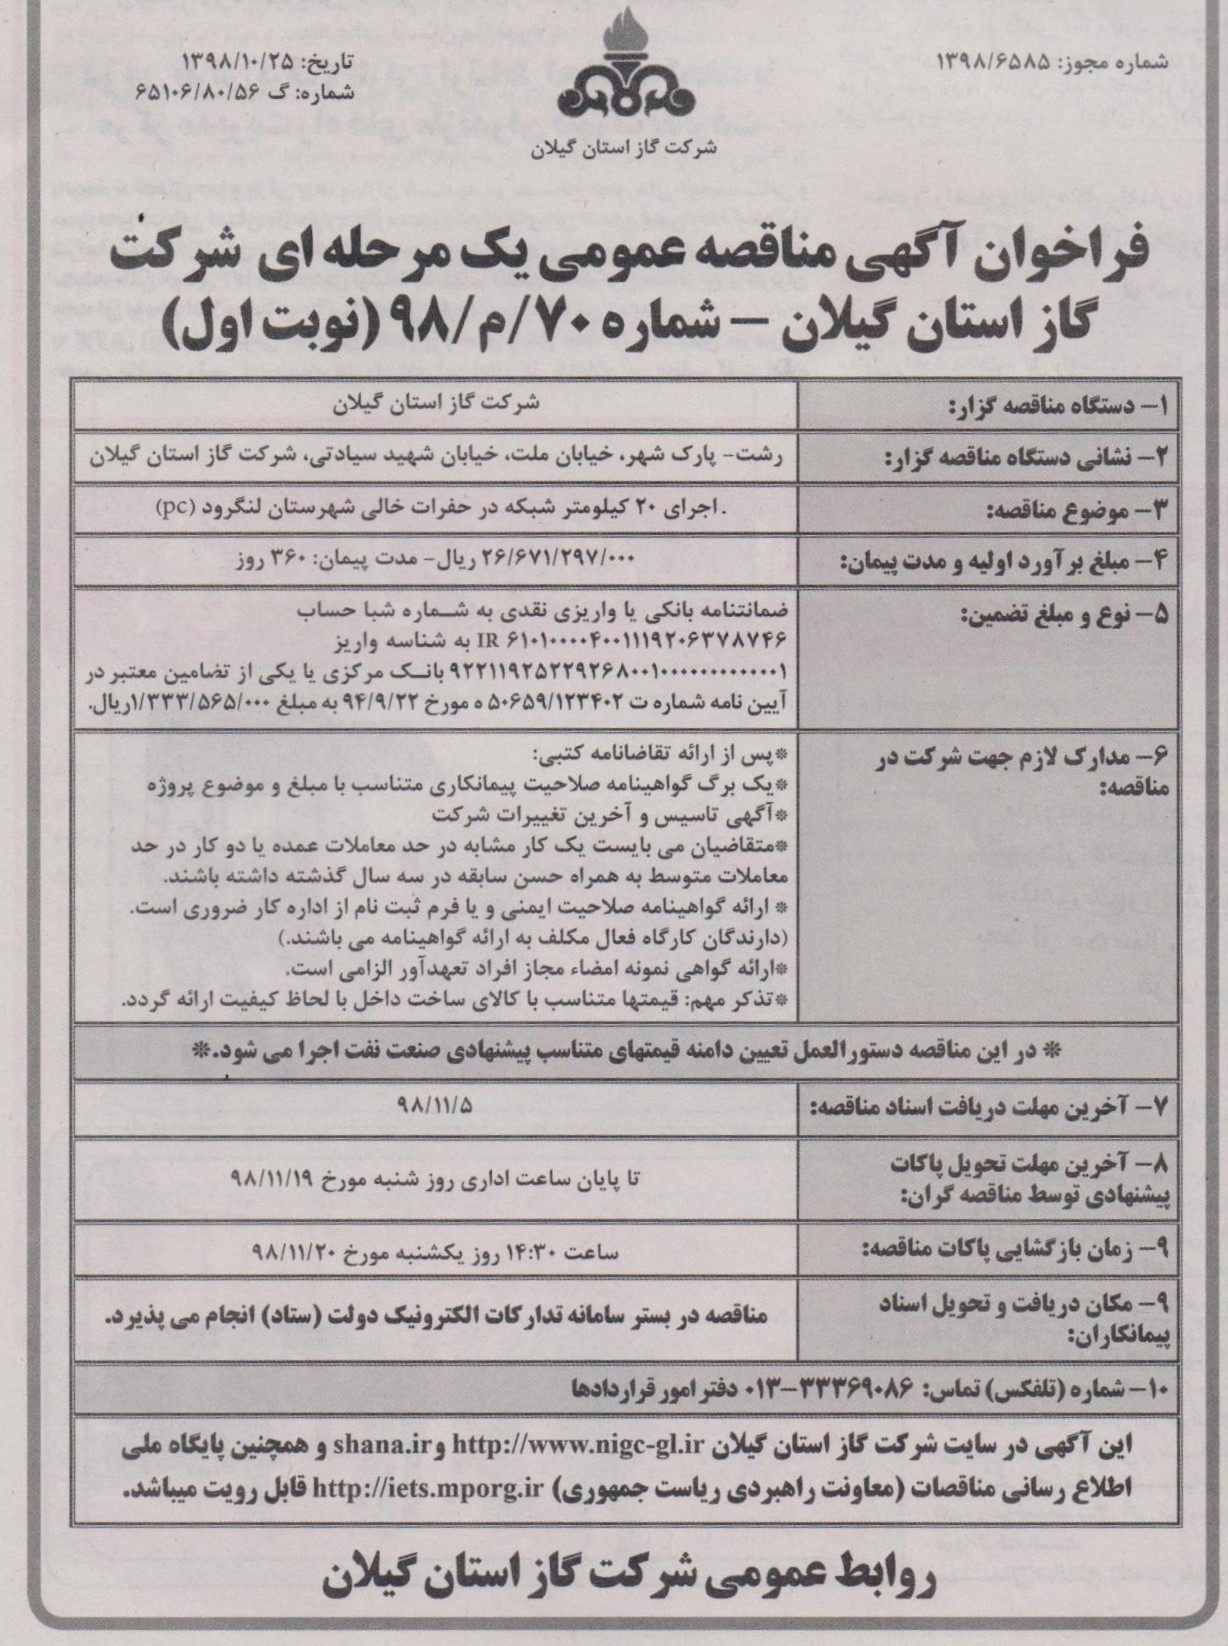 اجرای 20 کیلومتر شبکه در حفرات خالی شهرستان لنگرود - 1 بهمن